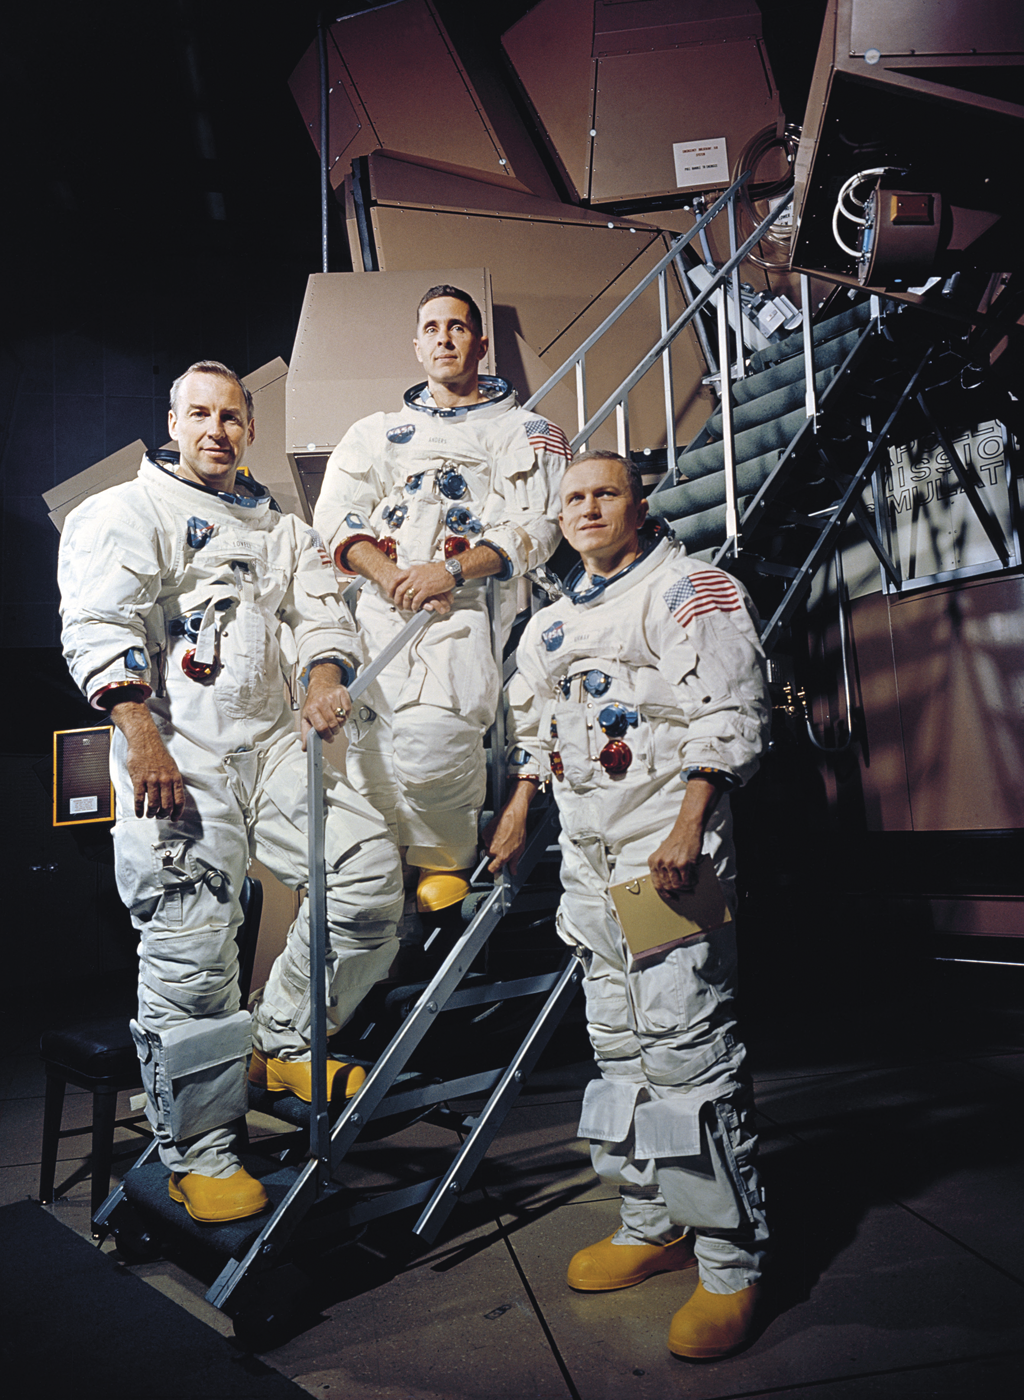 Foto da tripulação da Apollo 8 durante treinamento. Eles estão com os trajes de astronauta no pe de uma escada.